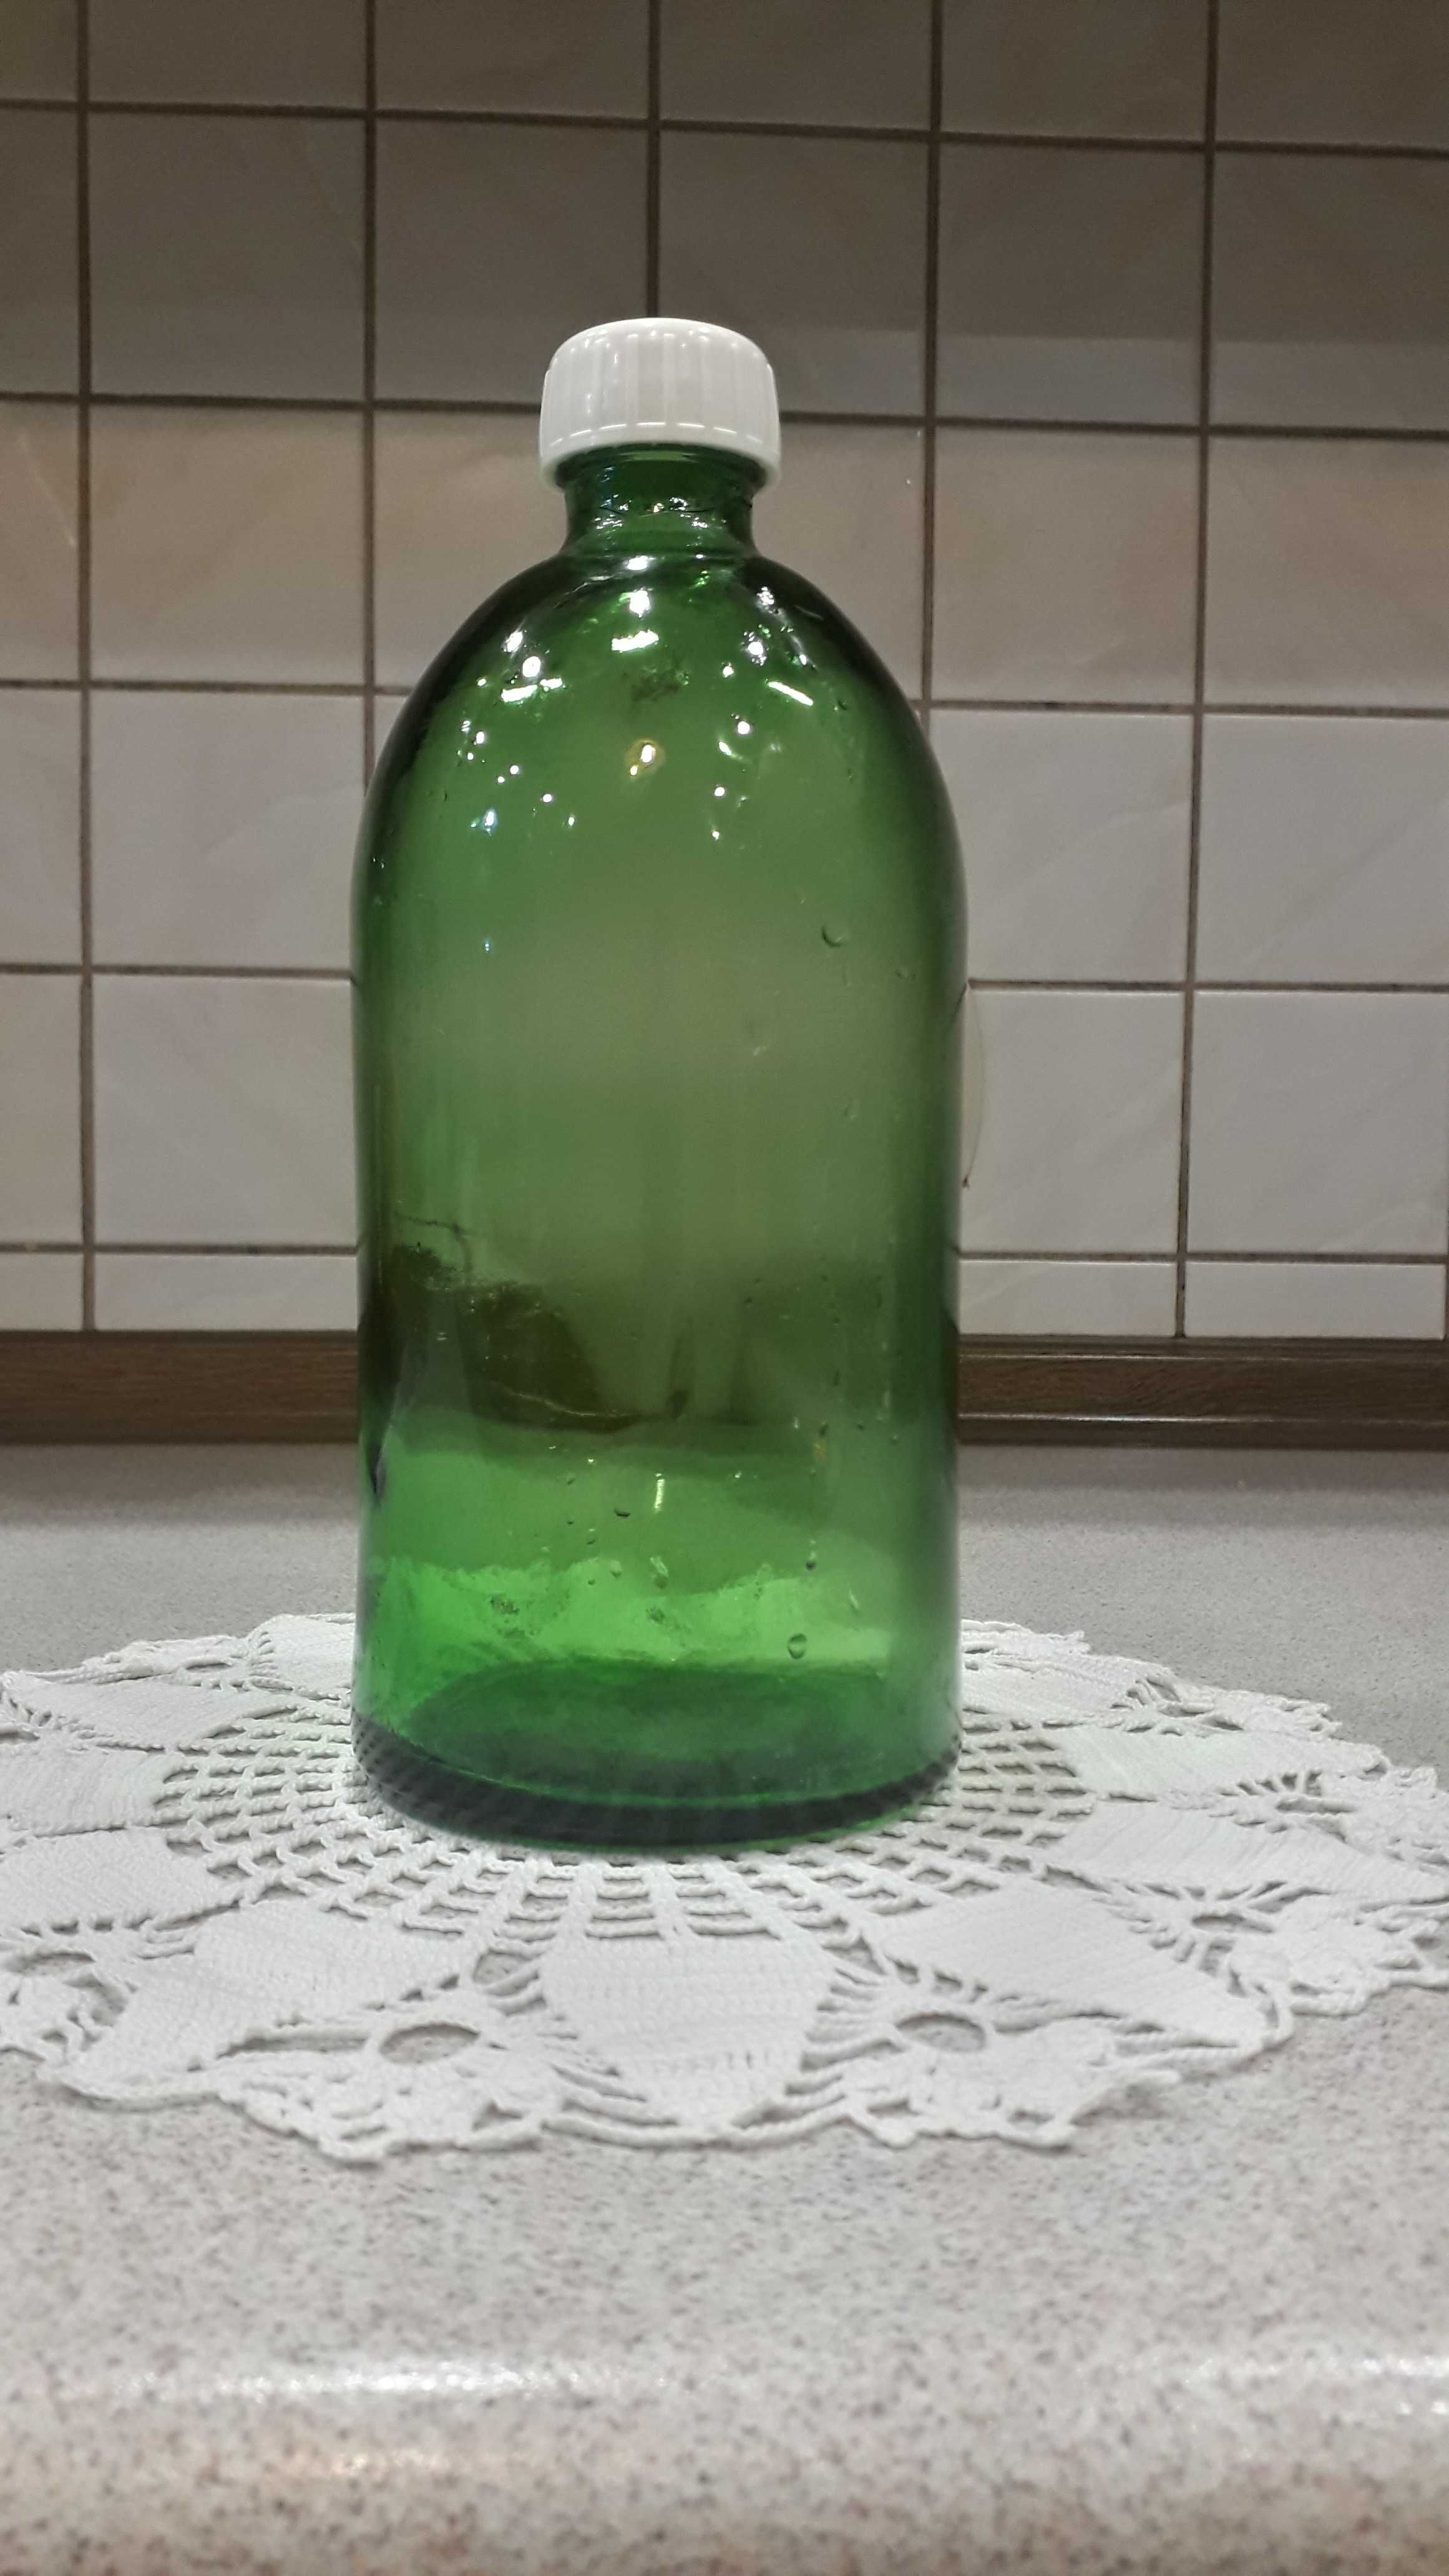 Stara apteczna butelka z zielonego szkła 1000 ml